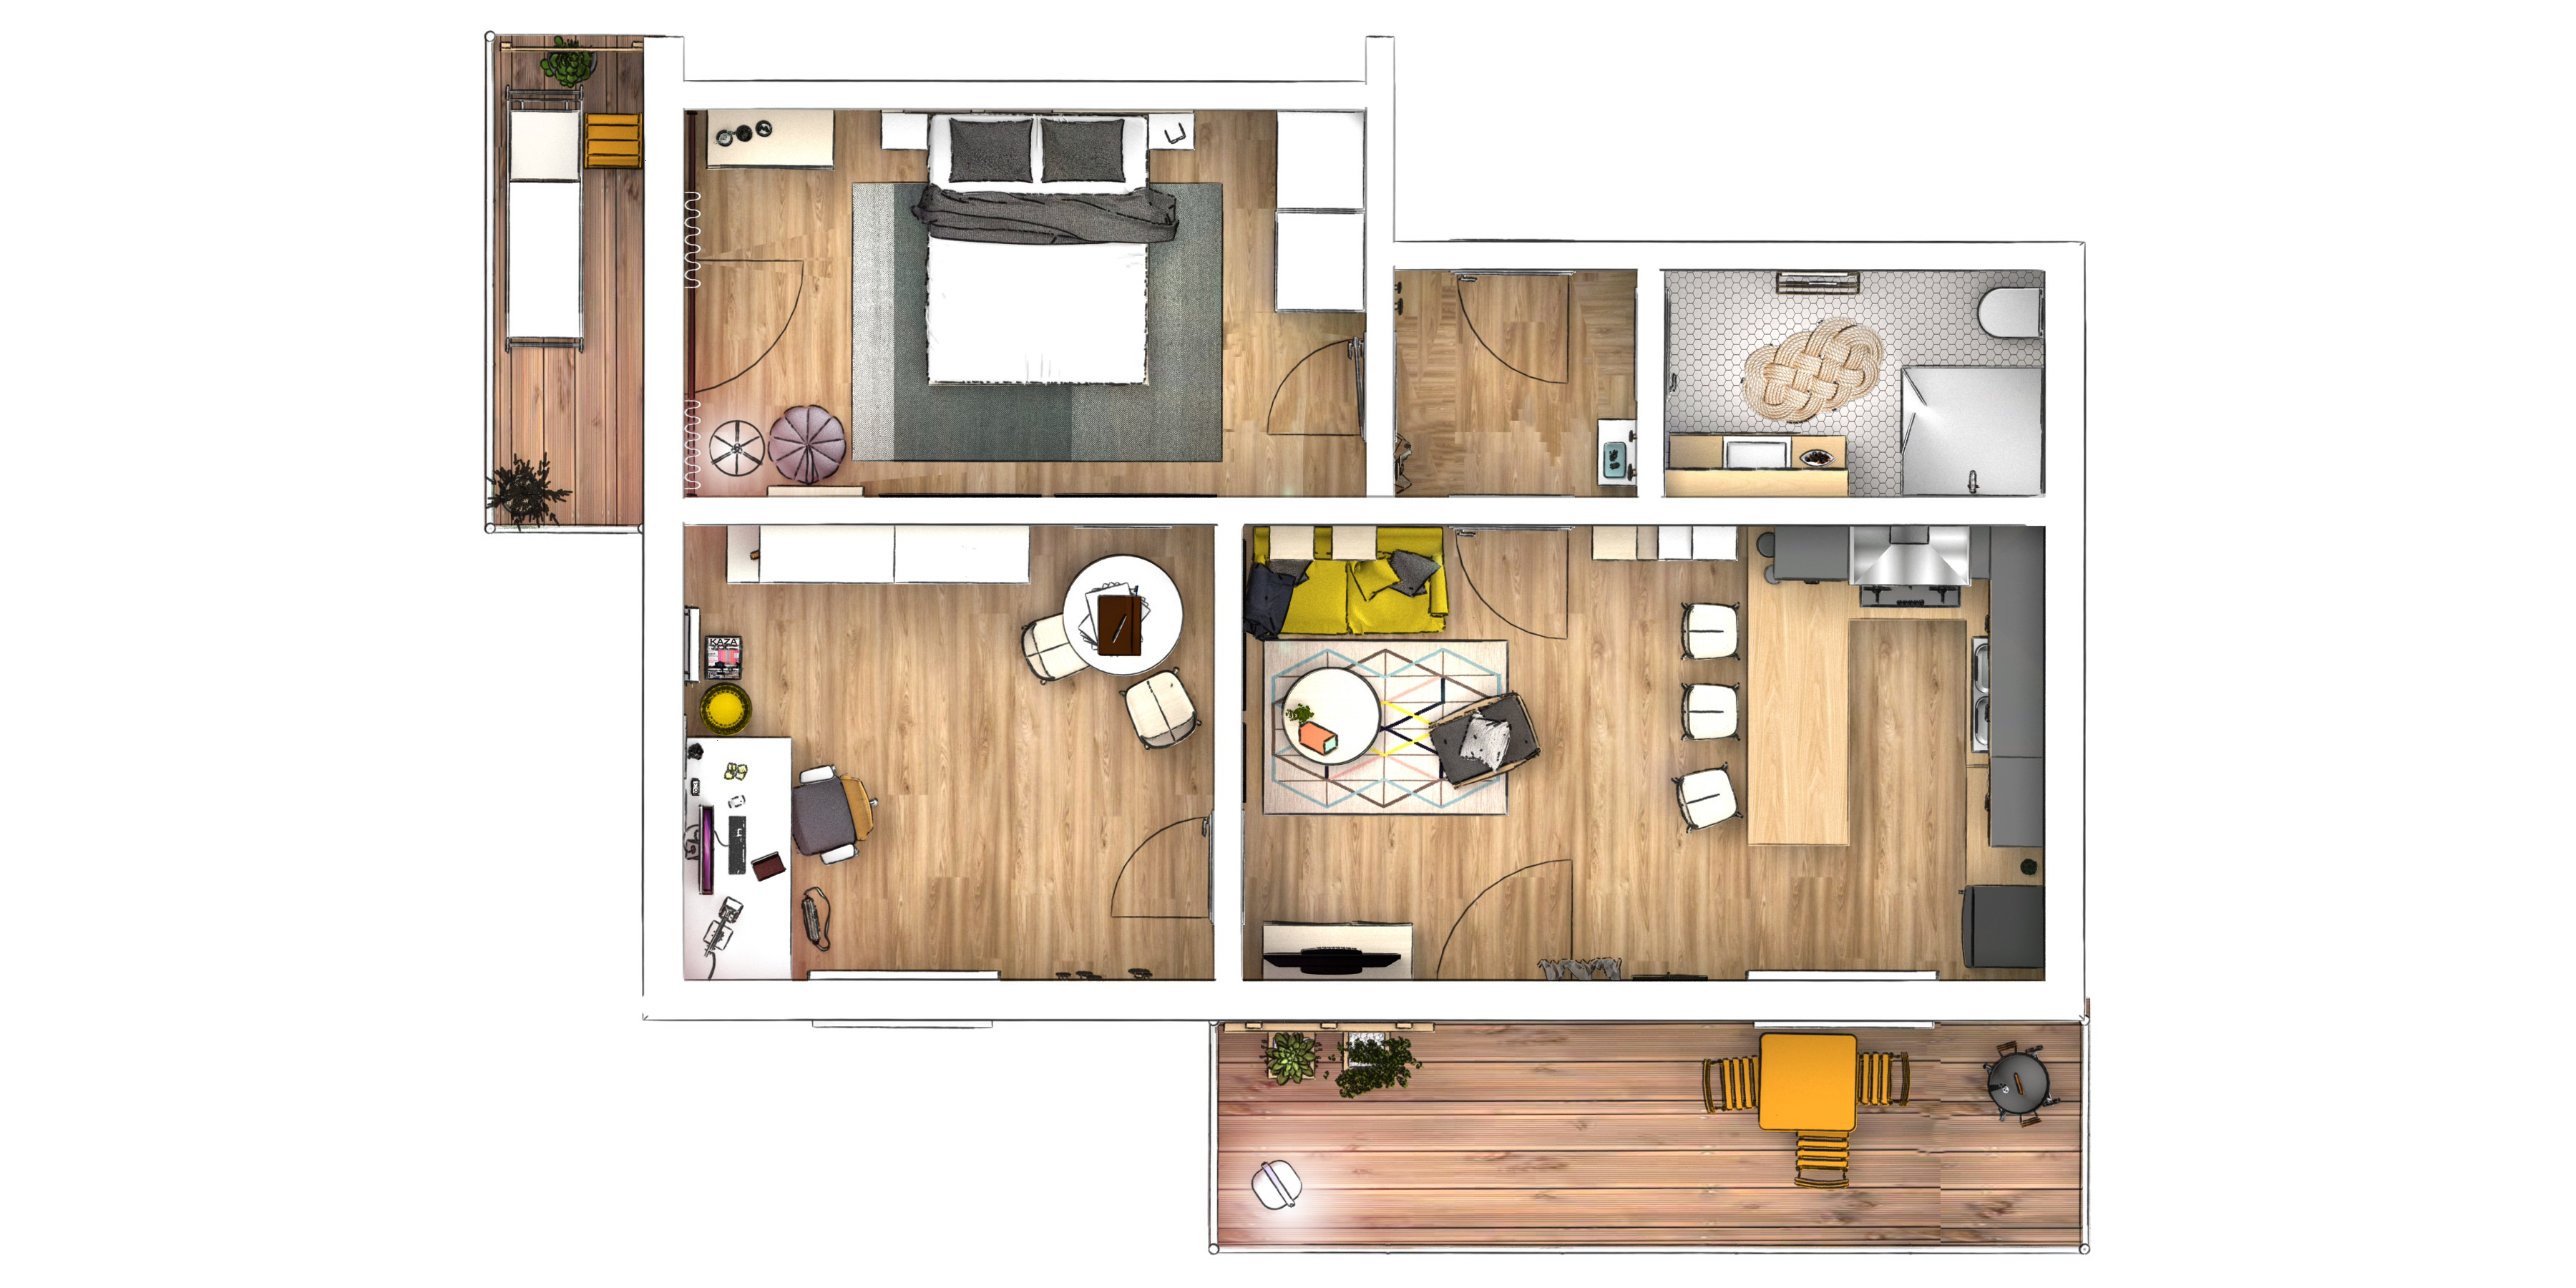 Grundriss: 3D Rendering einer modernen Wohnung. Innenarchitektur